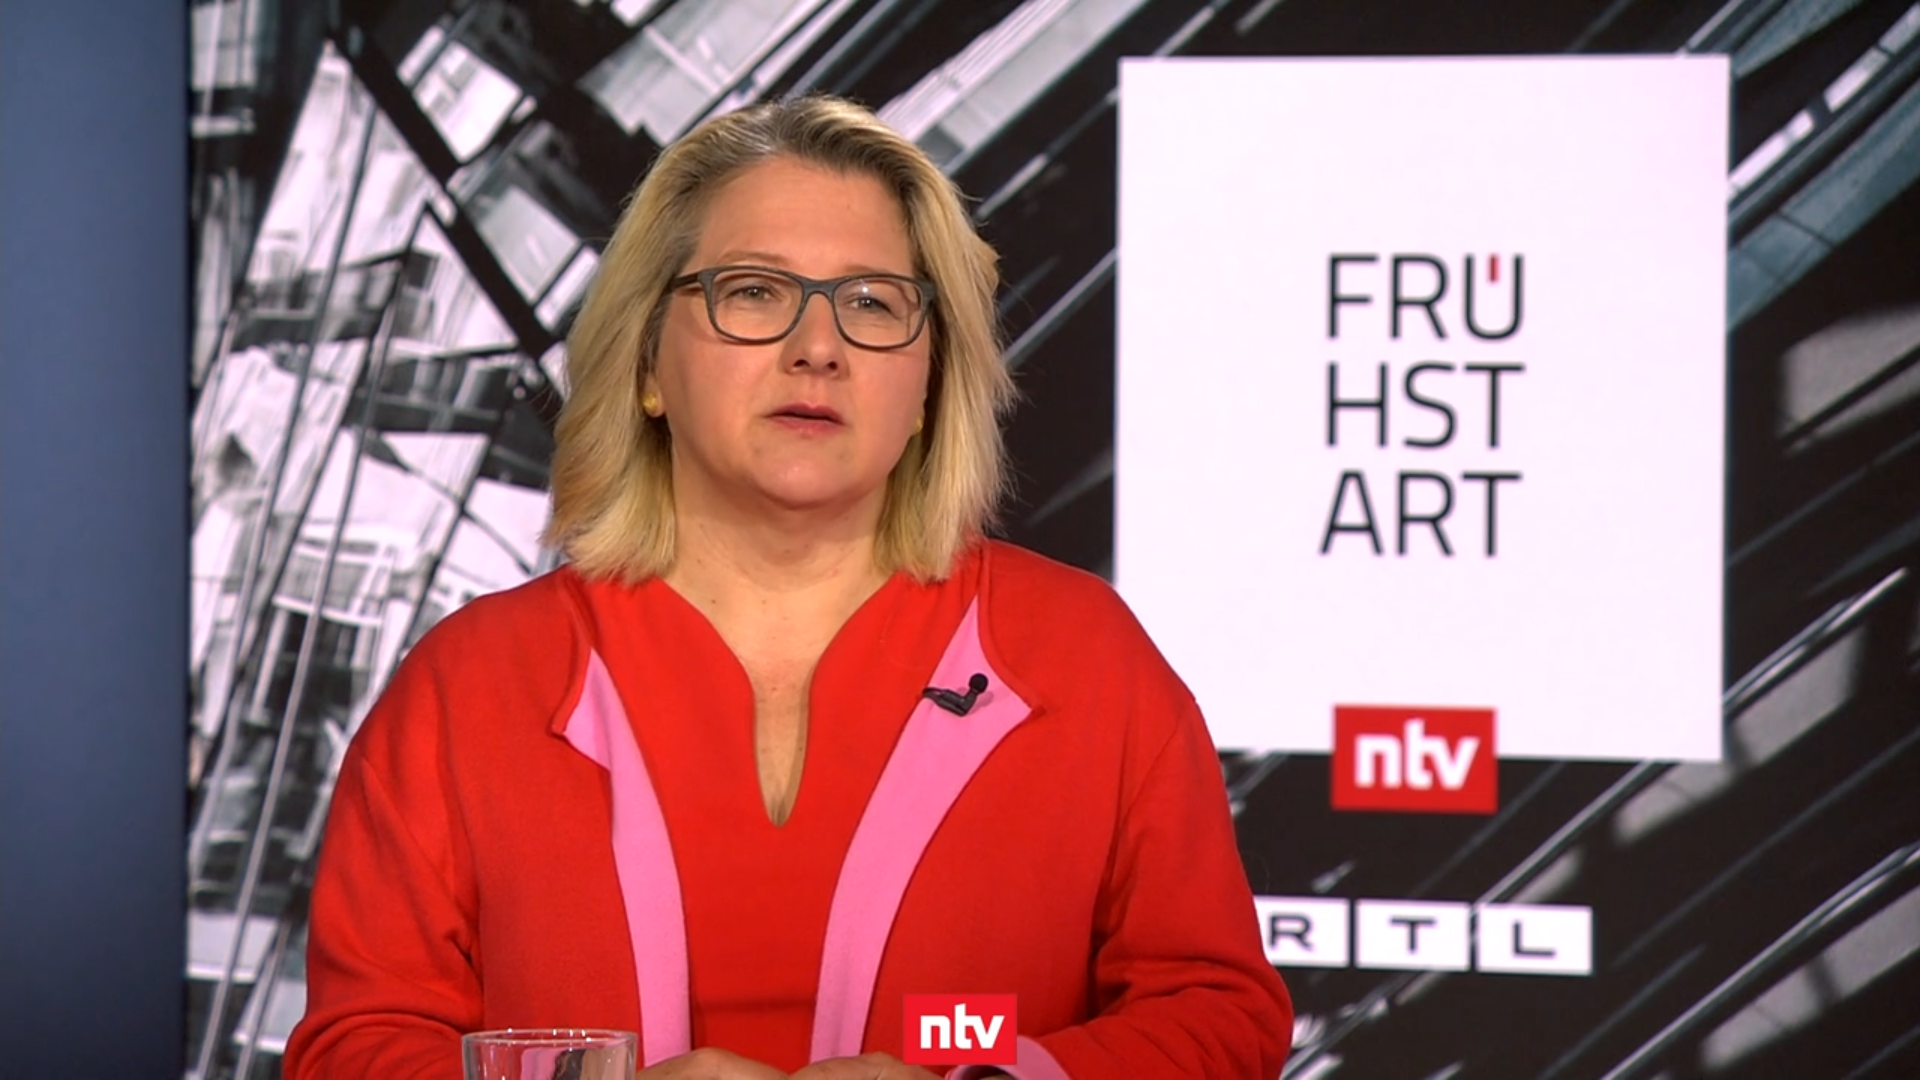 Standbild aus der Sendung "ntv Frühstart" vom 4. April 2022 mit Entwicklungsministerin Svenja Schulze